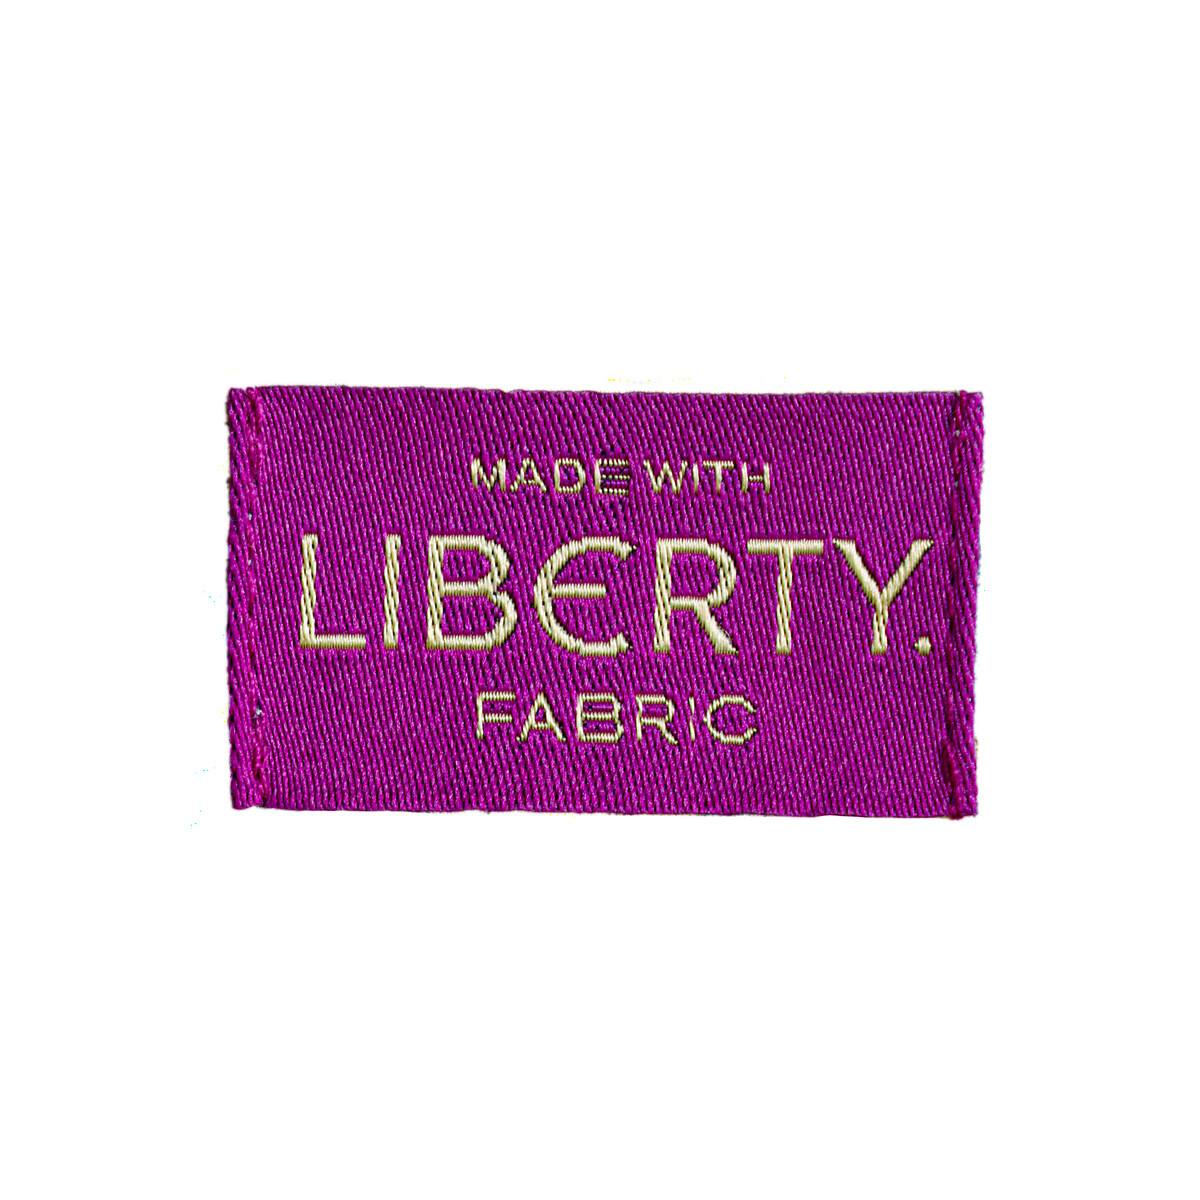 Шорты С принтом Liberty Fabrics 40 (FR) - 46 (RUS) другие LaRedoute, размер 40 (FR) - 46 (RUS) Шорты С принтом Liberty Fabrics 40 (FR) - 46 (RUS) другие - фото 5